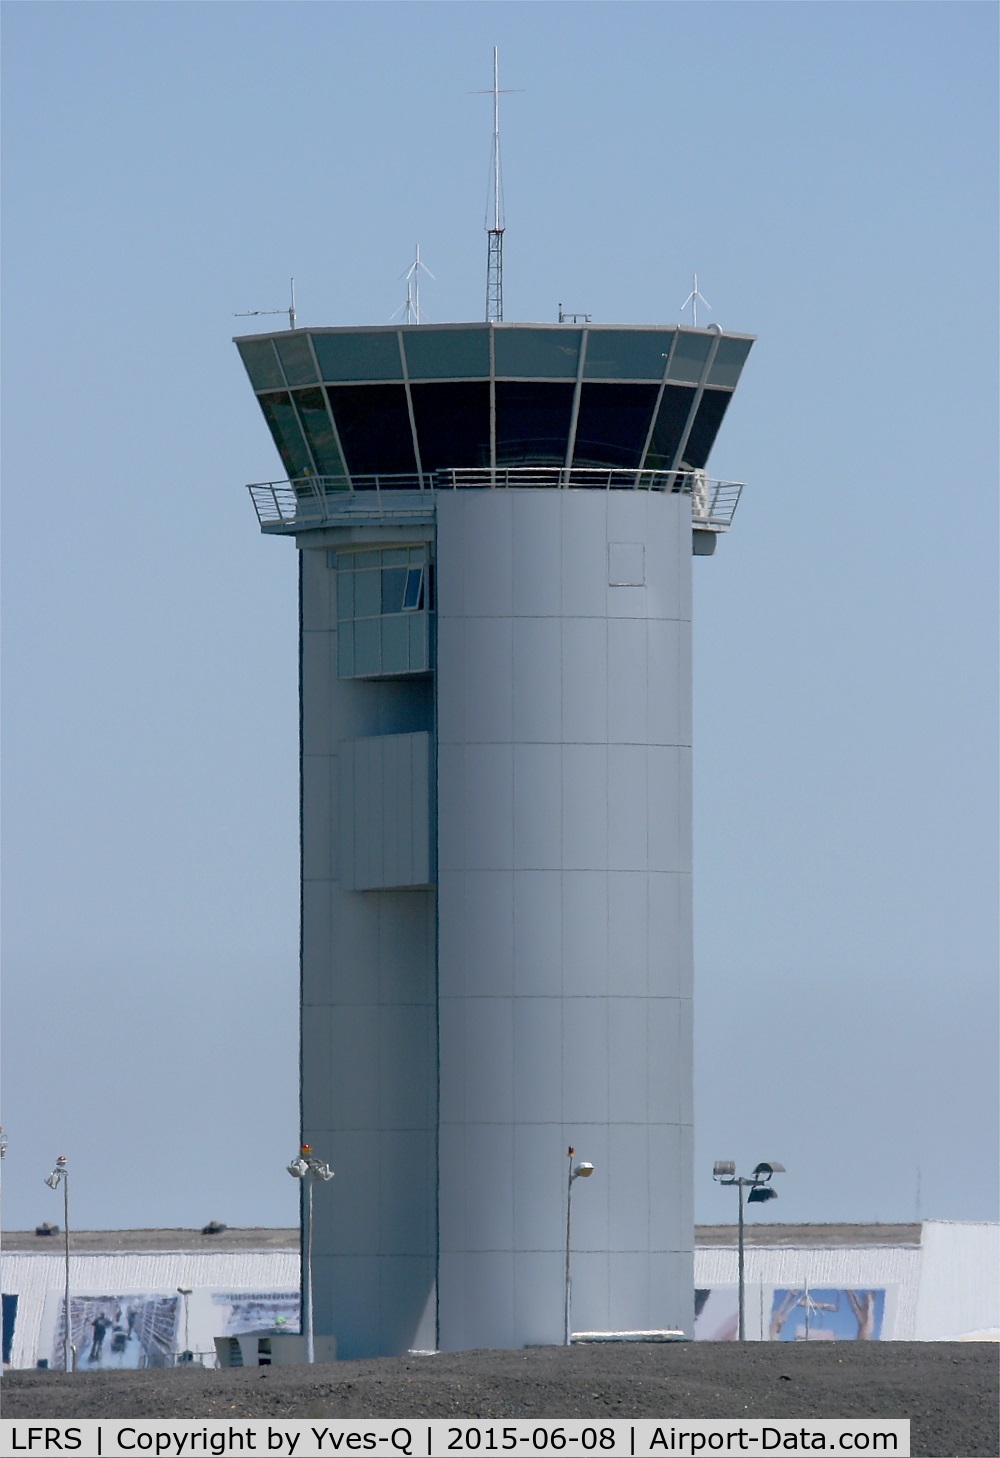 Nantes Atlantique Airport (formerly Aéroport Château Bougon), Nantes France (LFRS) - Control tower, Nantes-Atlantique airport (LFRS-NTE)